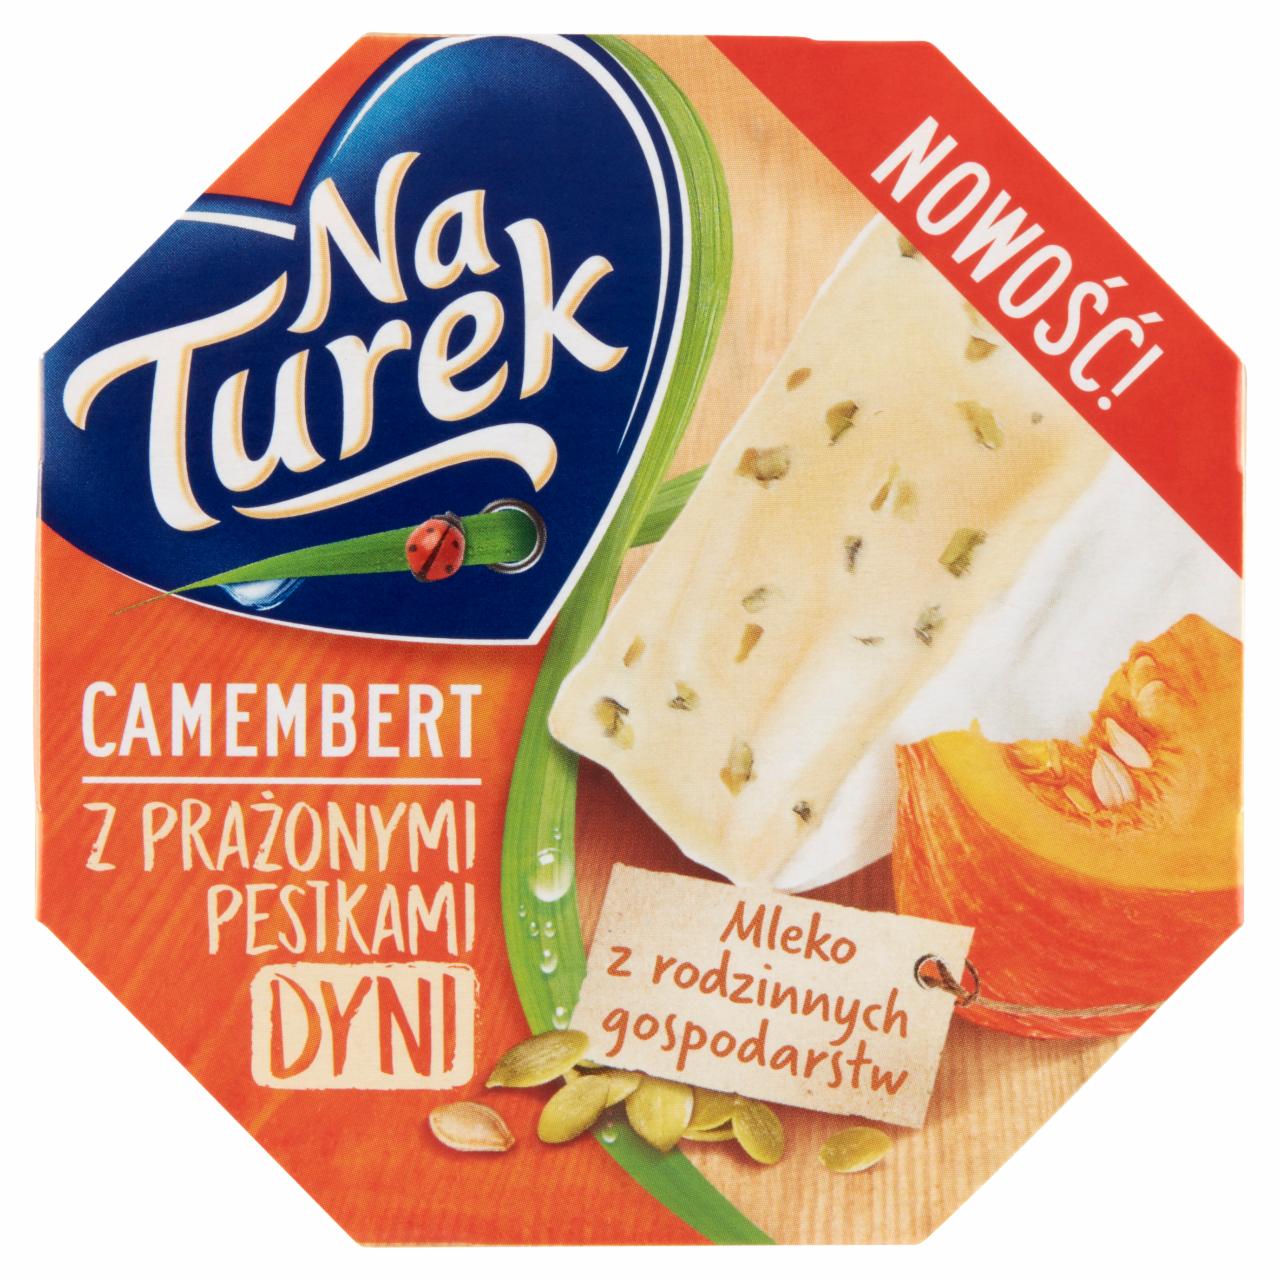 Zdjęcia - NaTurek Camembert z prażonymi pestkami dyni 120 g